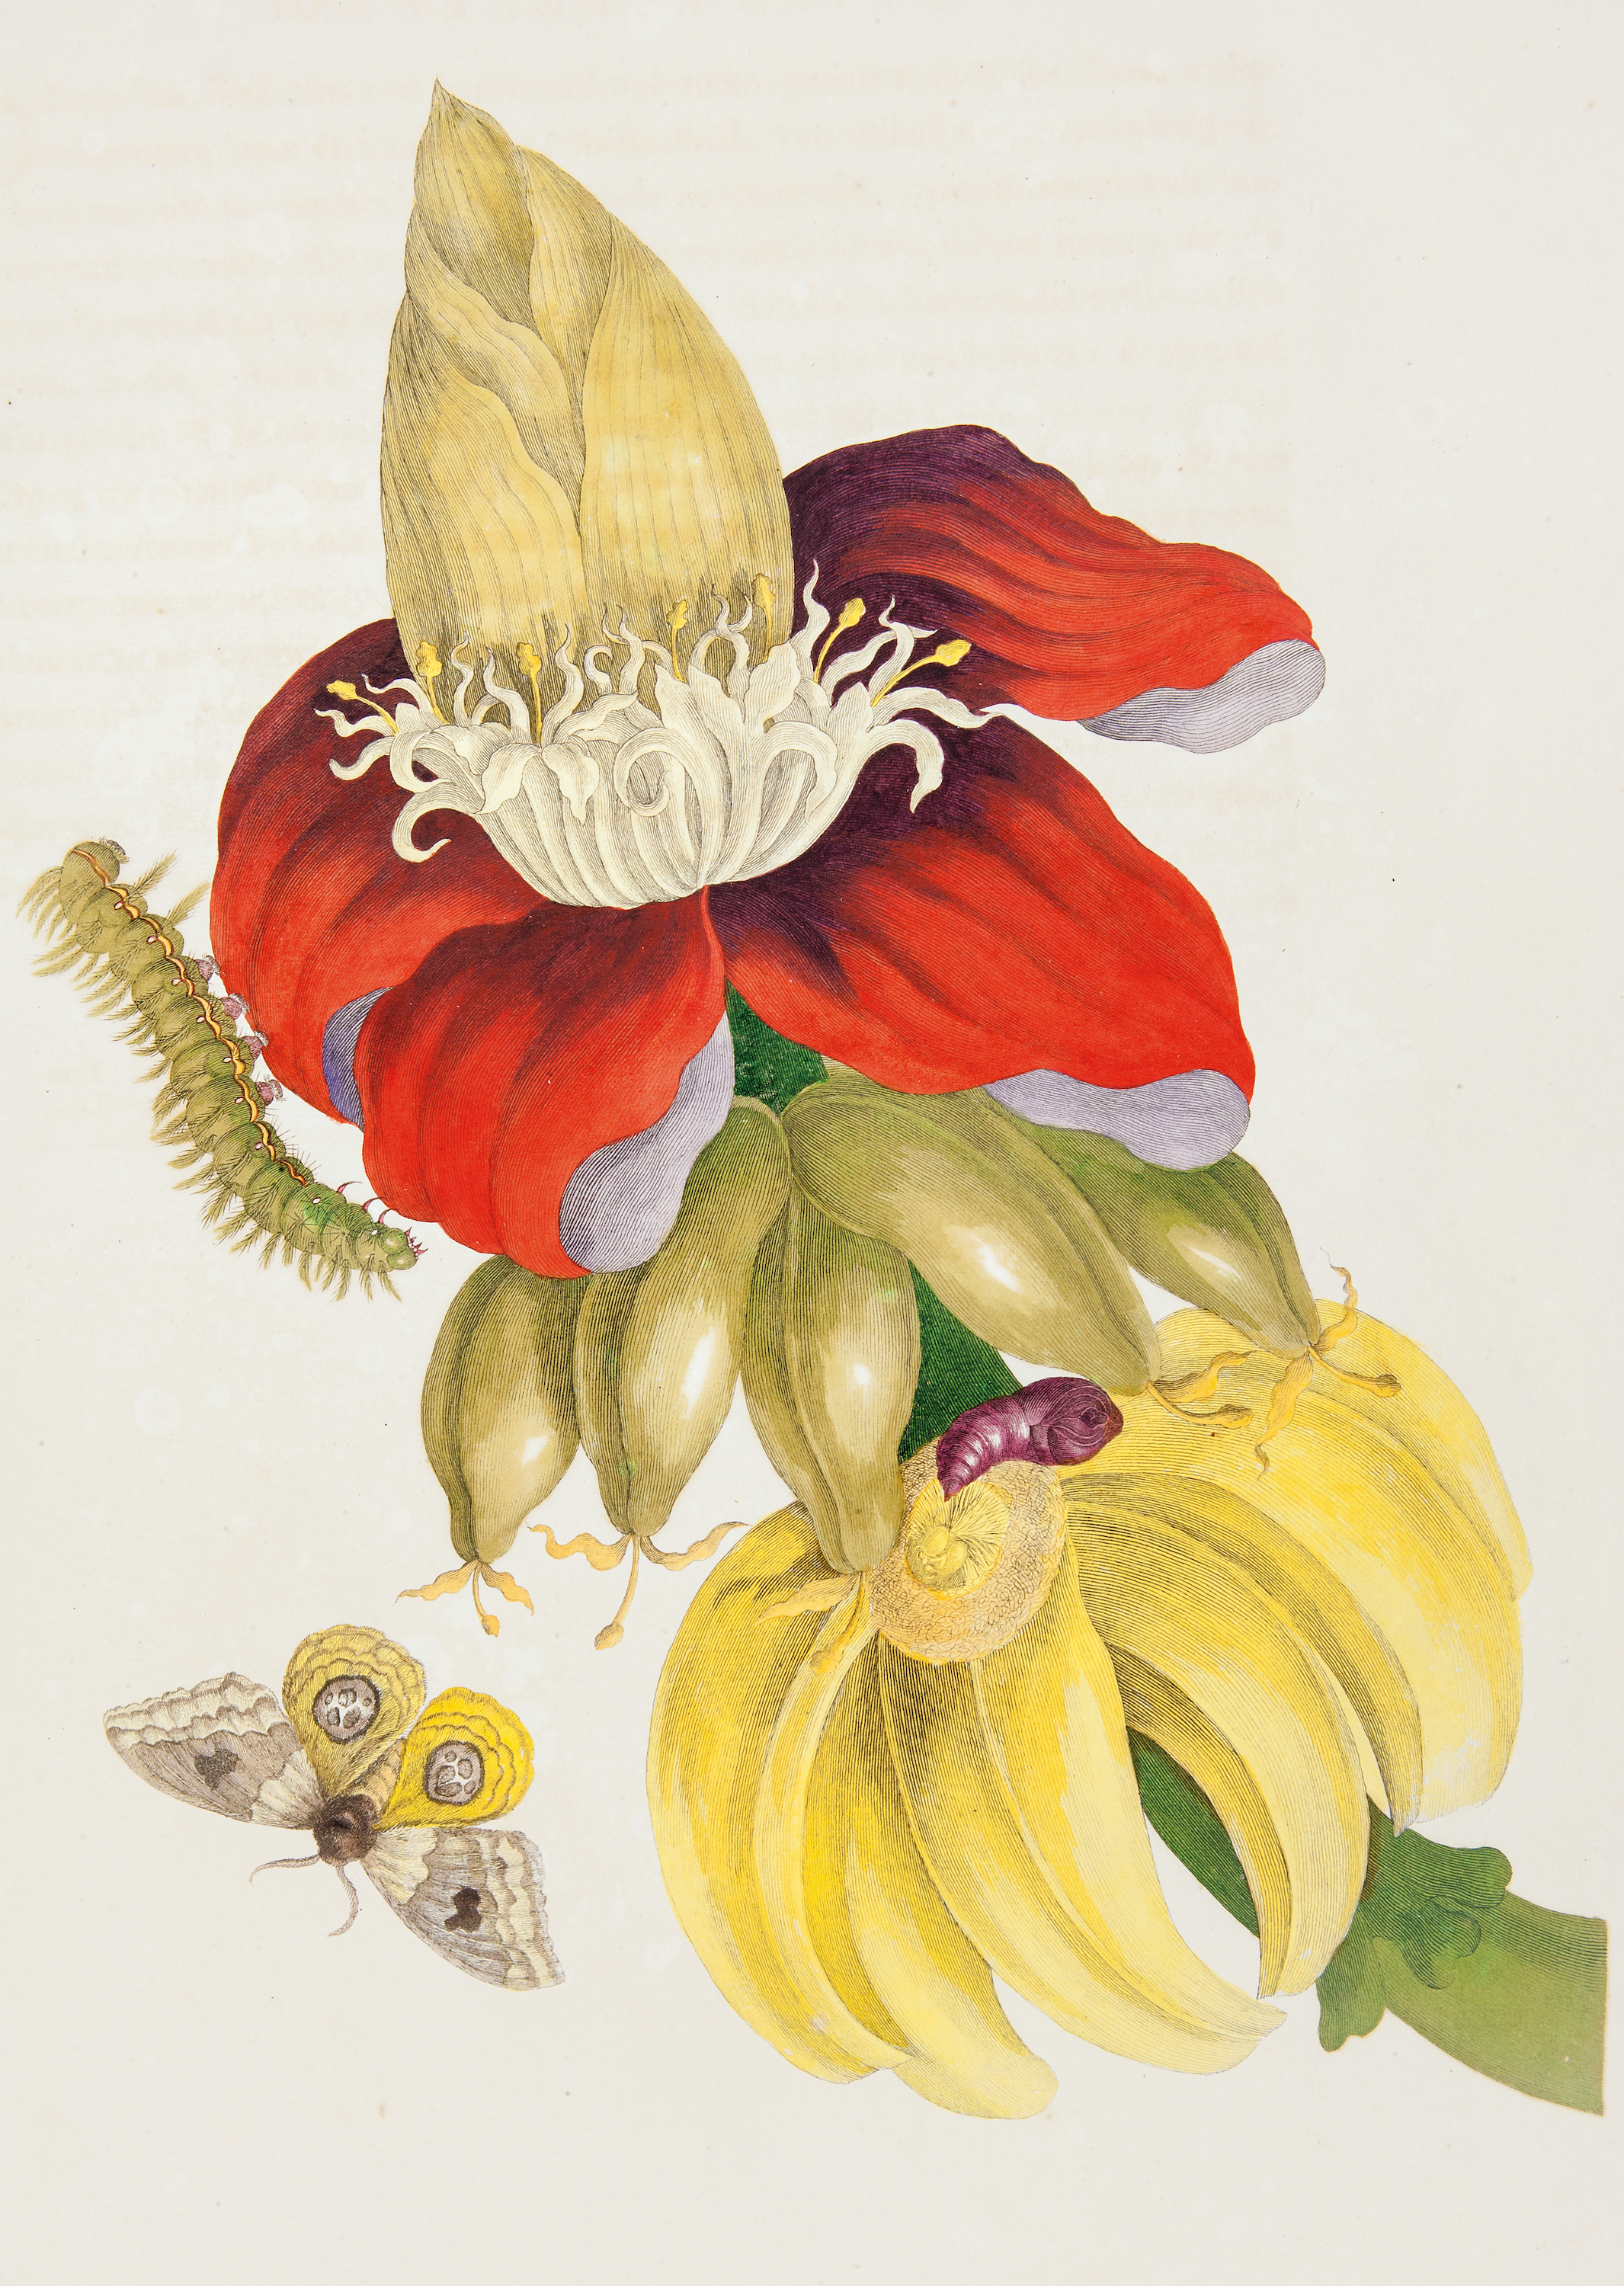 نبات الموز ومراحل الحياة لعثة عين الثور by Pieter Sluyter after Maria Sibylla Merian - 1705 